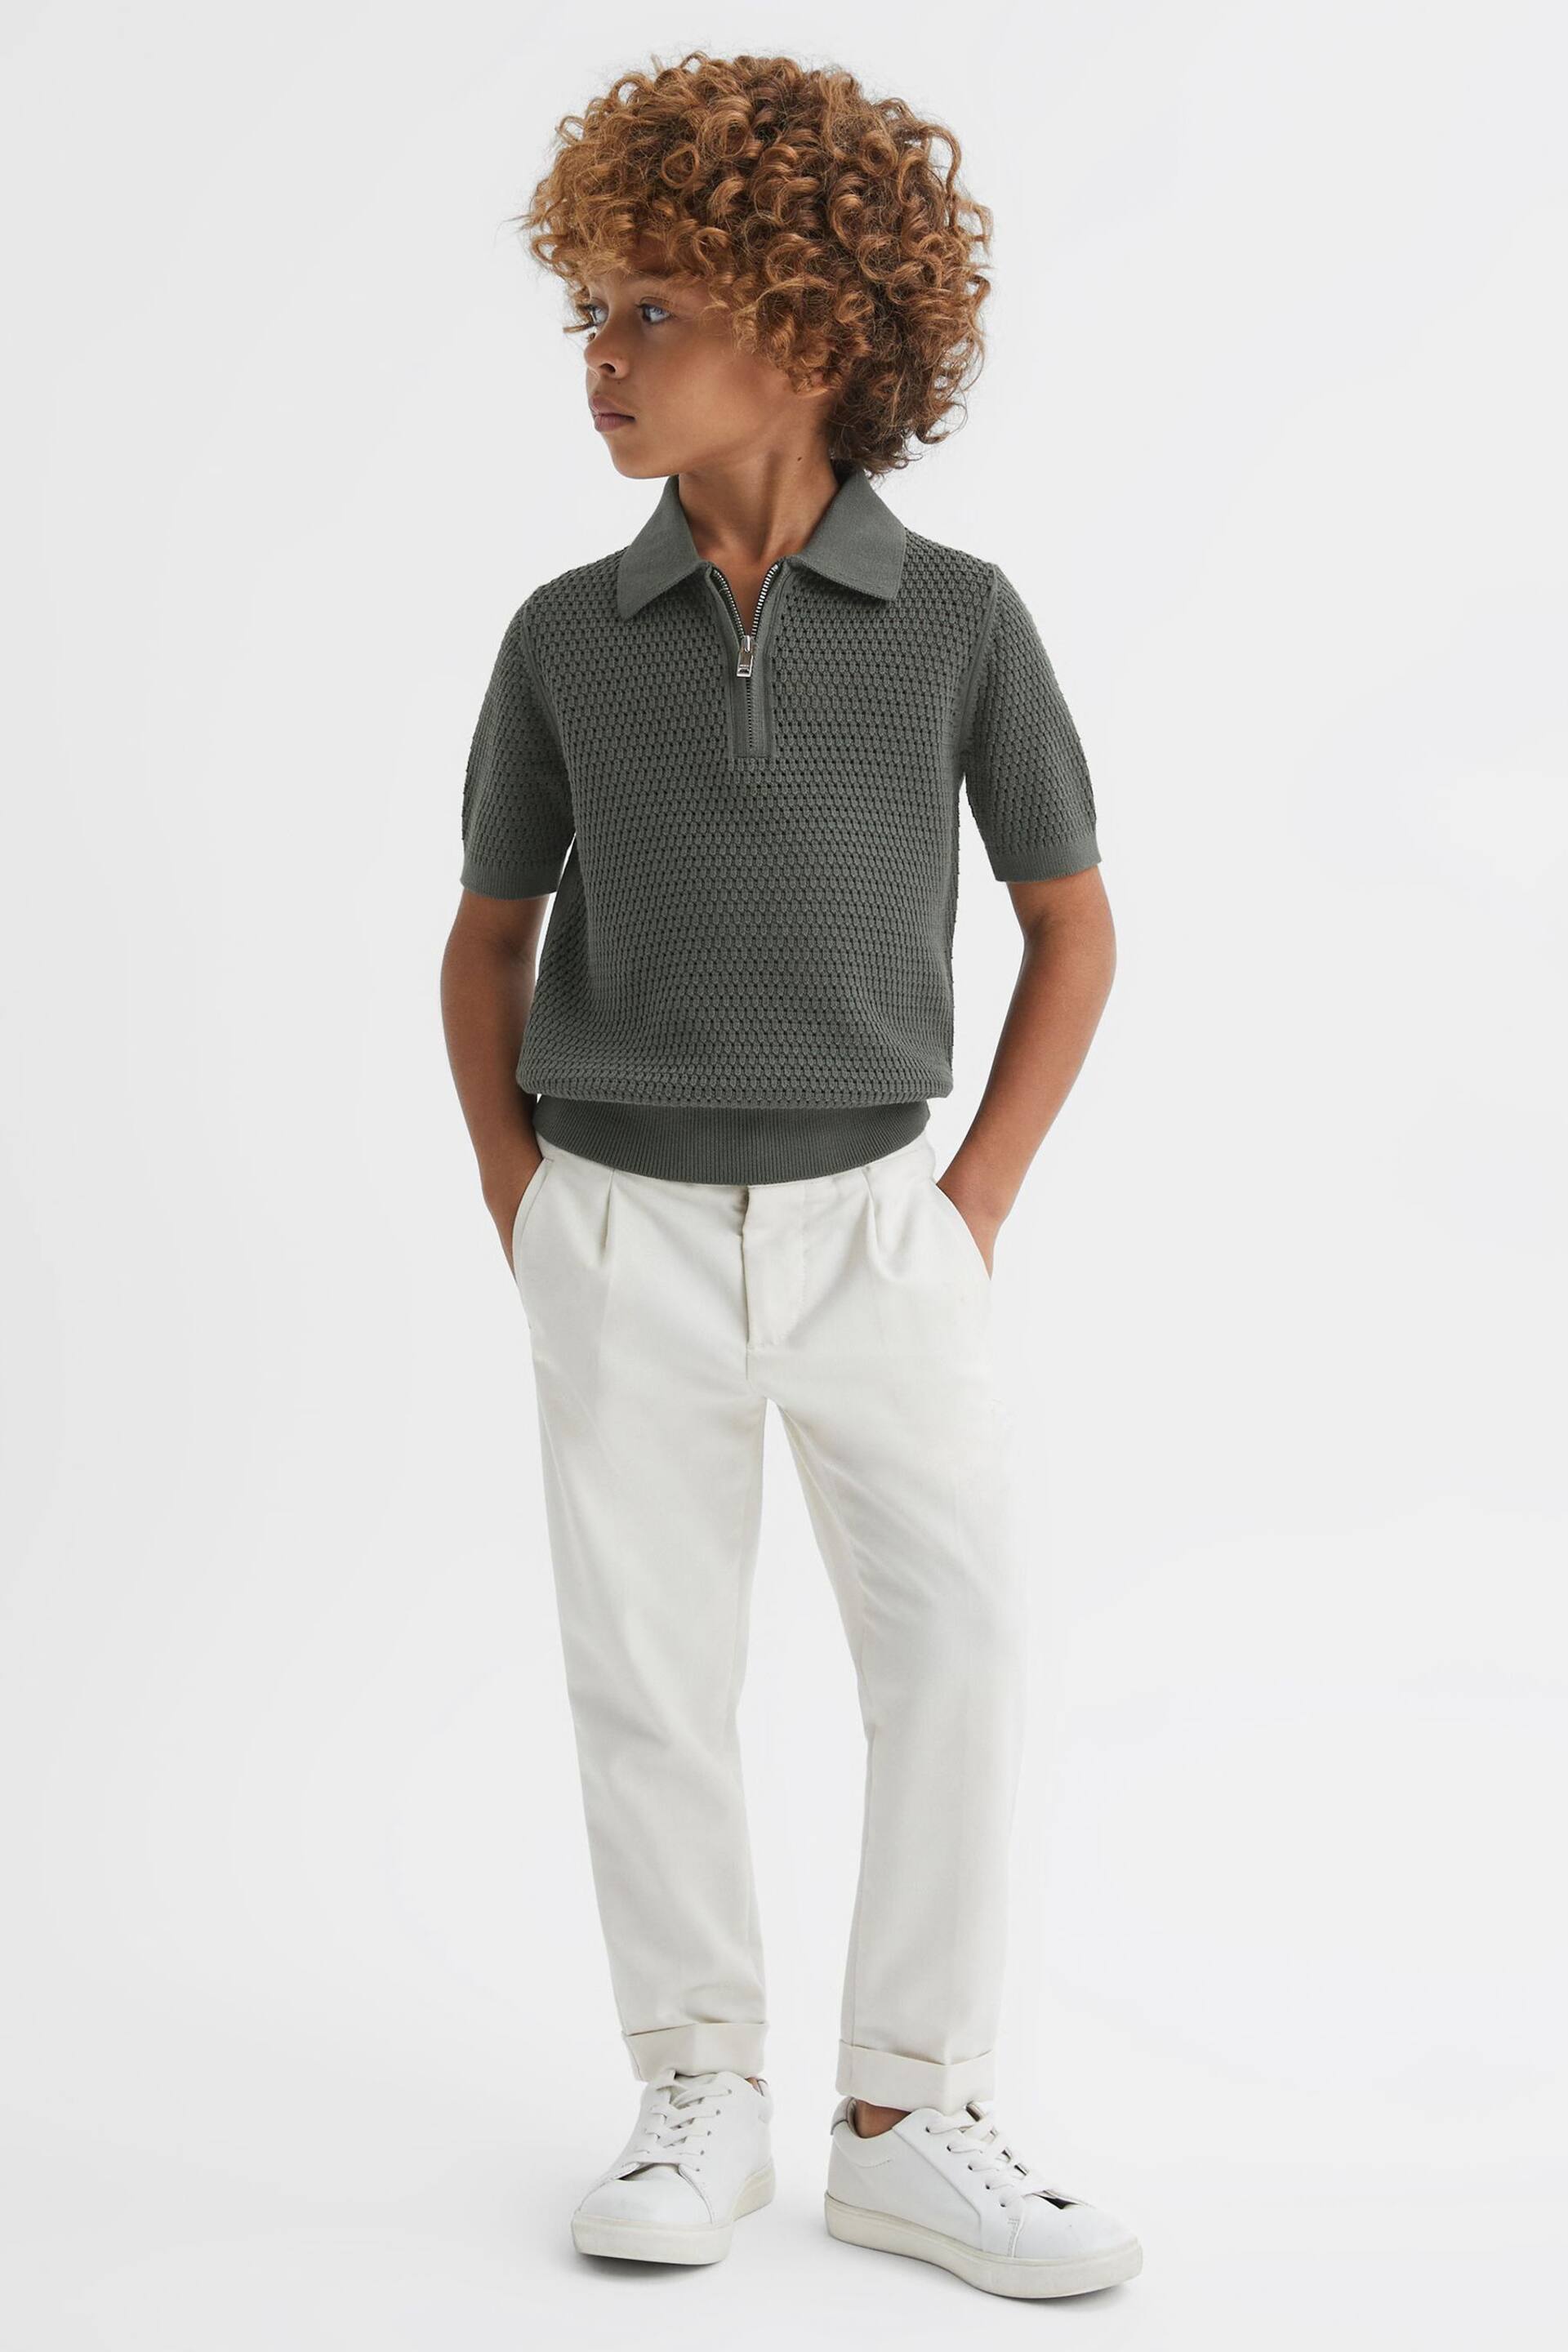 Reiss Dark Sage Burnham Junior Textured Half-Zip Polo T-Shirt - Image 1 of 6